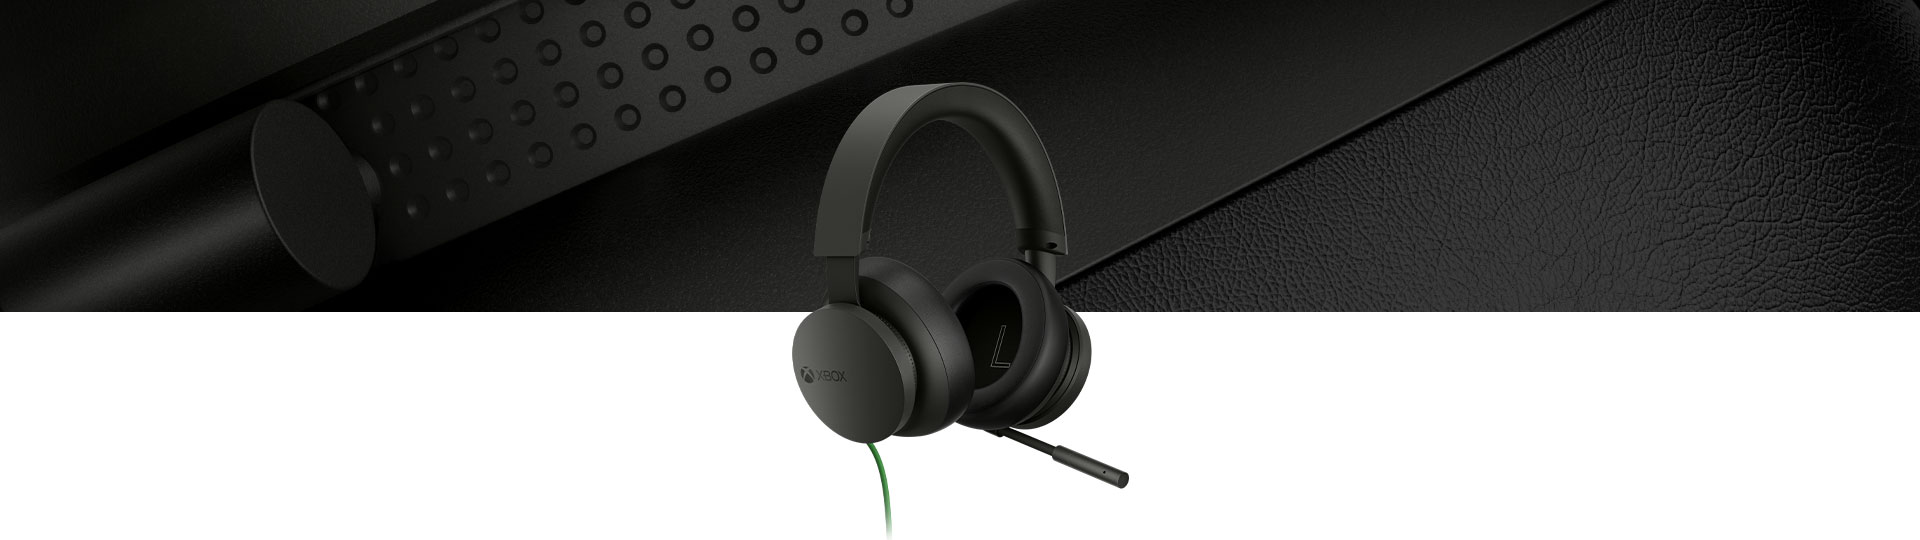 Arka planda mikrofonlu kulaklığın yakından görünümü ile Xbox Stereo mikrofonlu kulaklık